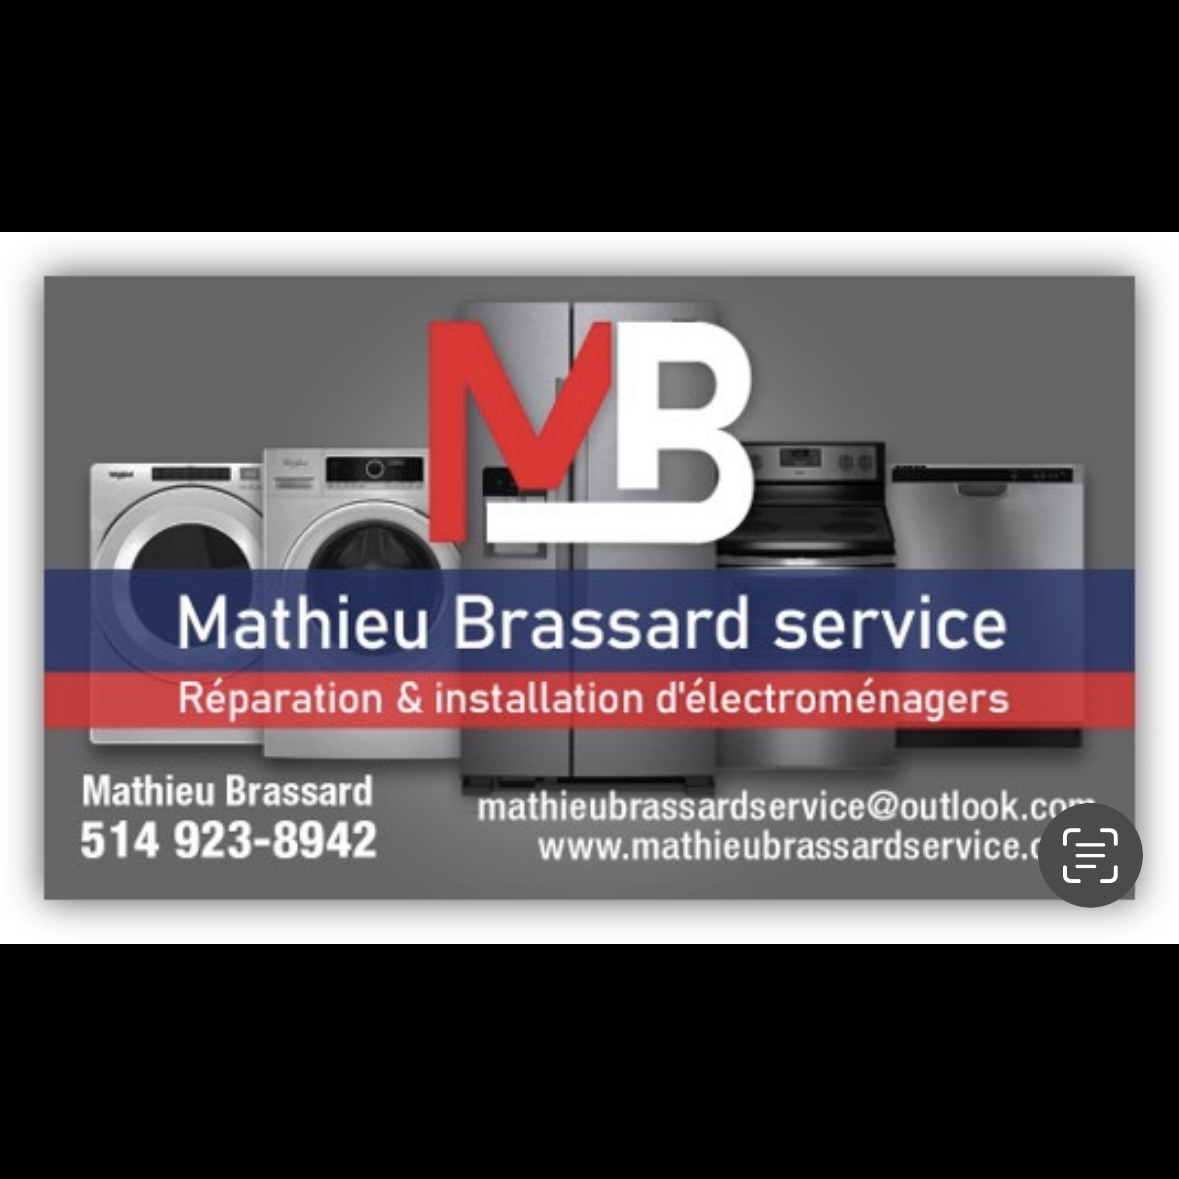 Mathieu Brassard service Inc.